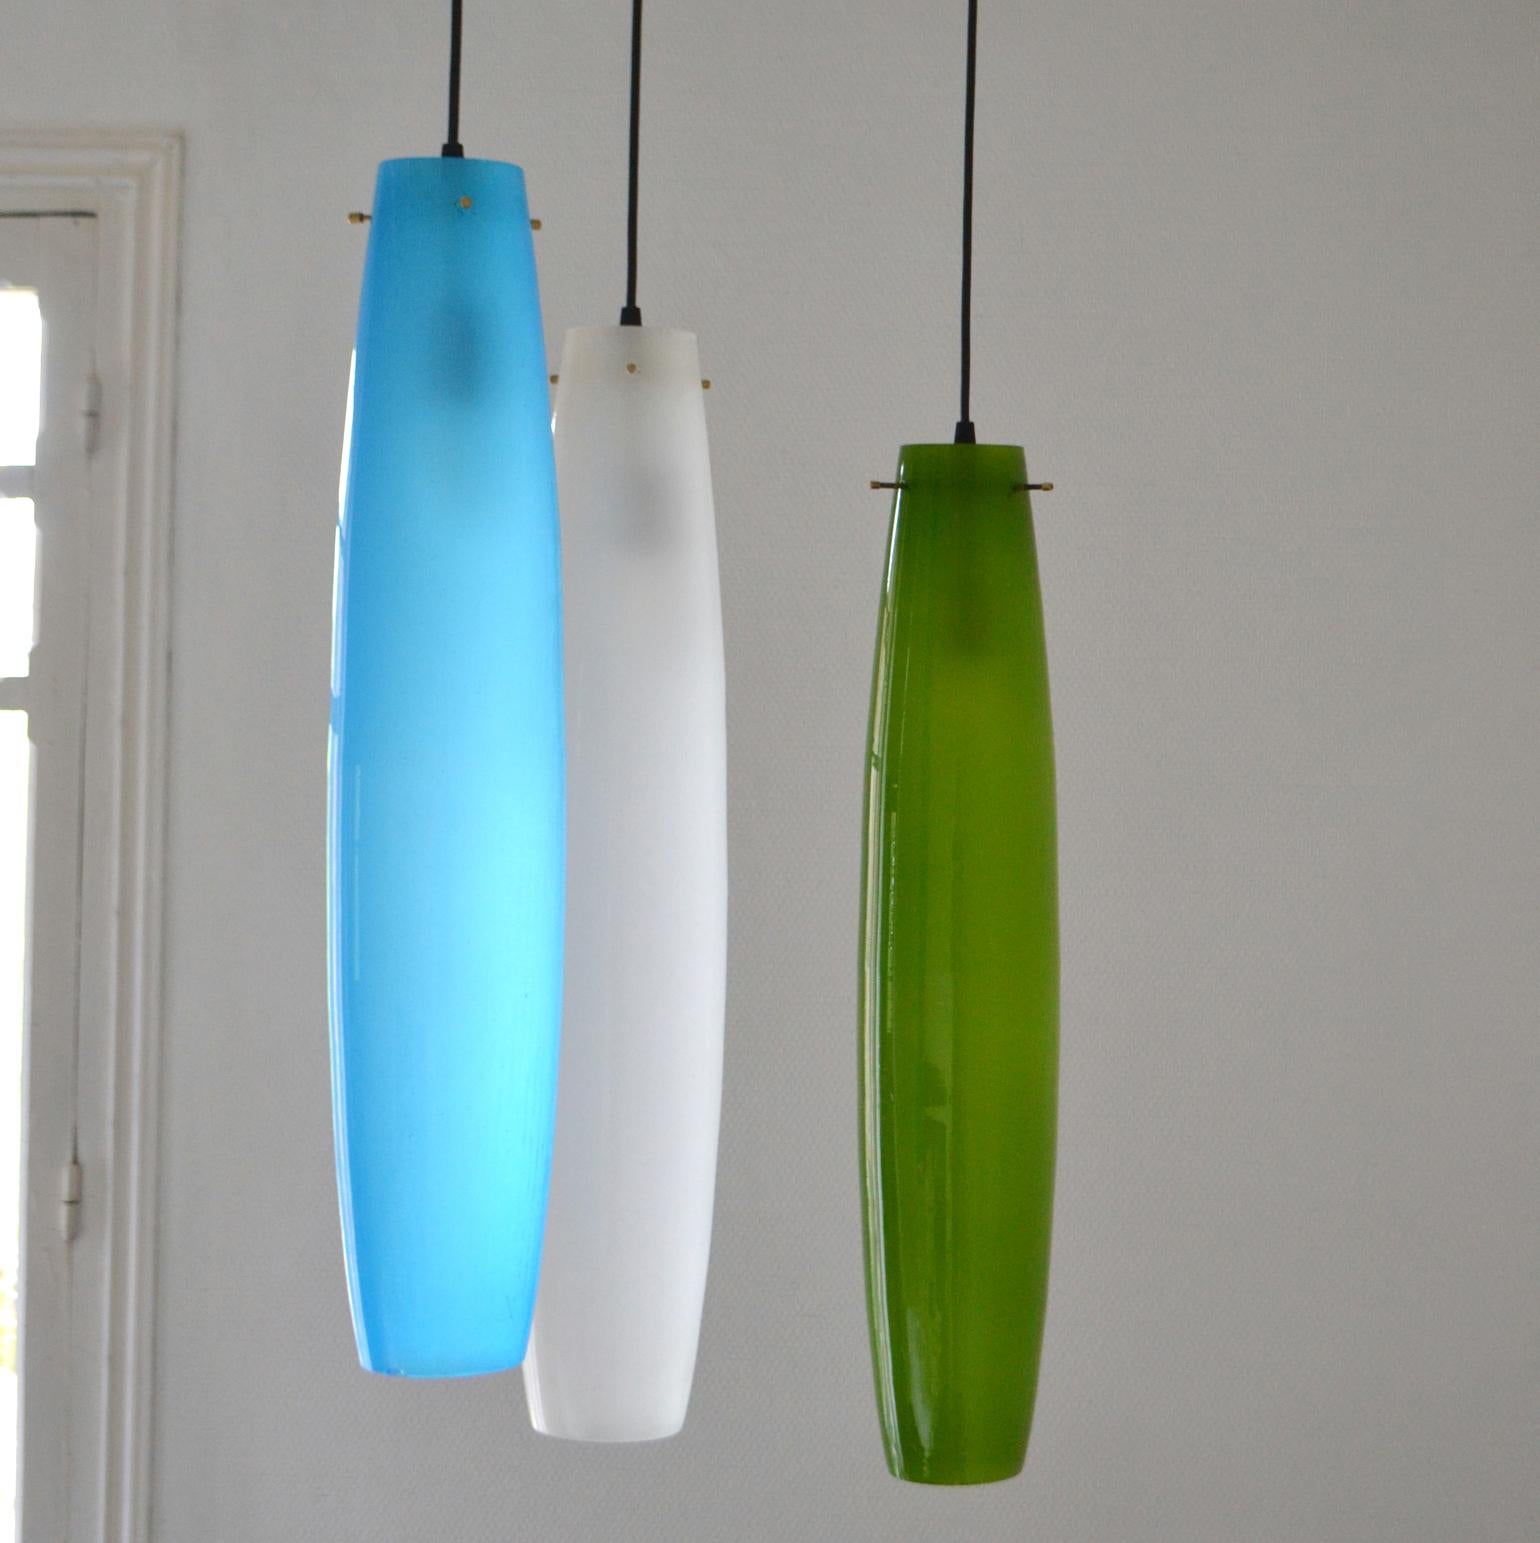 Deux ensembles de pendentifs allongés en verre soufflé de Murano de 3 couleurs : bleu, vert (à l'intérieur se trouve une fine couche soufflée de verre opale blanc translucide pour diffuser une lumière chaude et douce) et blanc. Les suspensions de